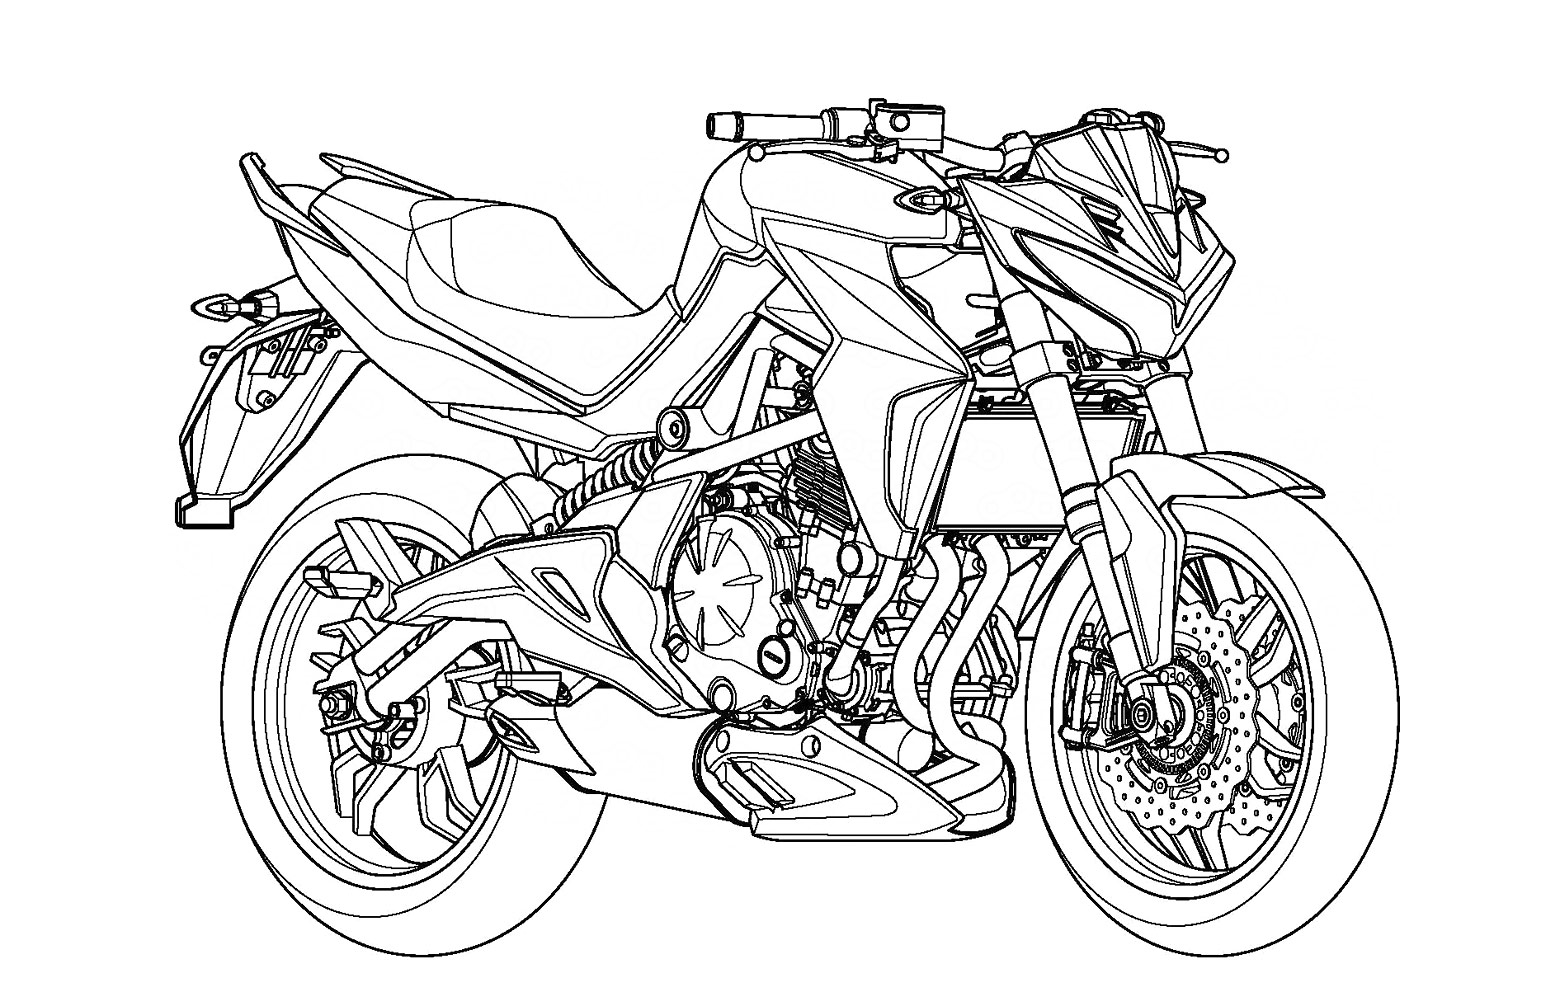 Патентный рисунок нового мотоцикла ER-6 от Kymco. 